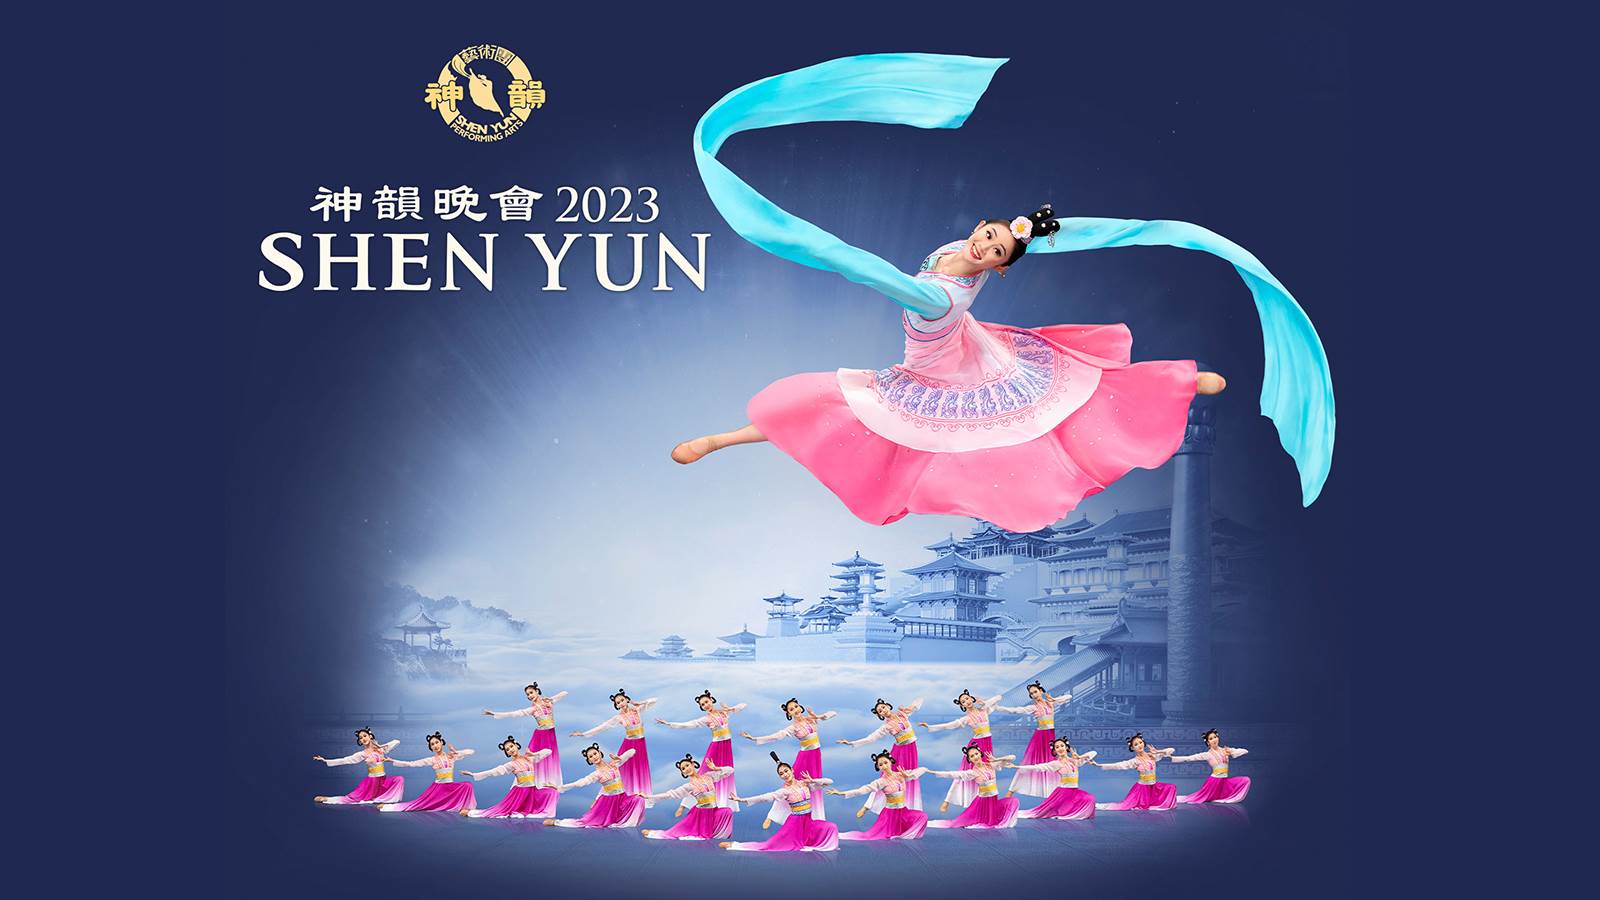 Shen Yun 2023 Kennedy Center